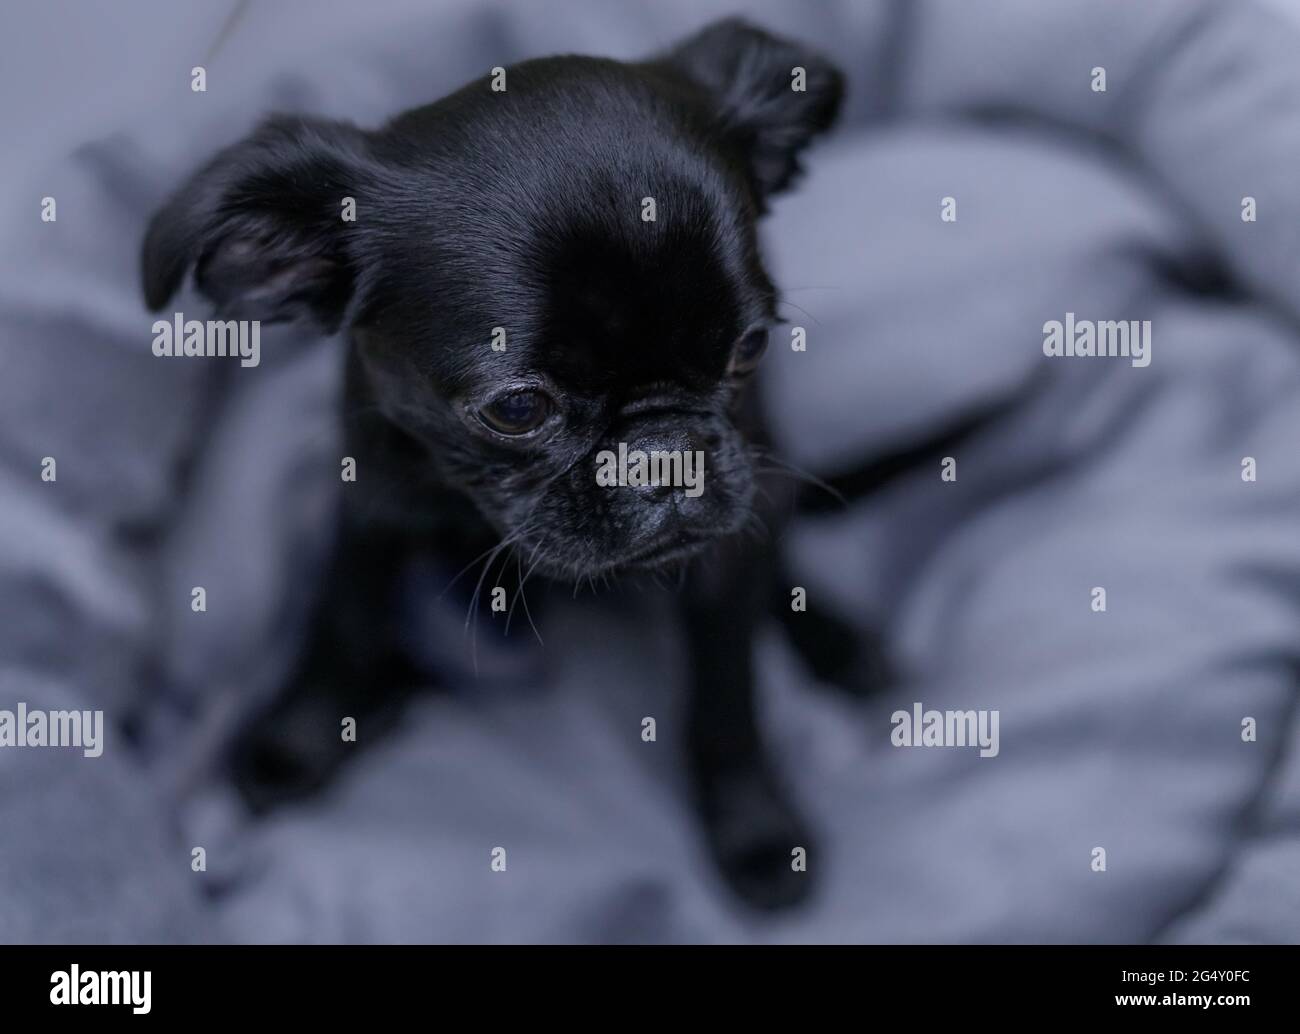 Kleiner schwarzer Hund, der auf einem grauen Puffer sitzt Stockfotografie -  Alamy